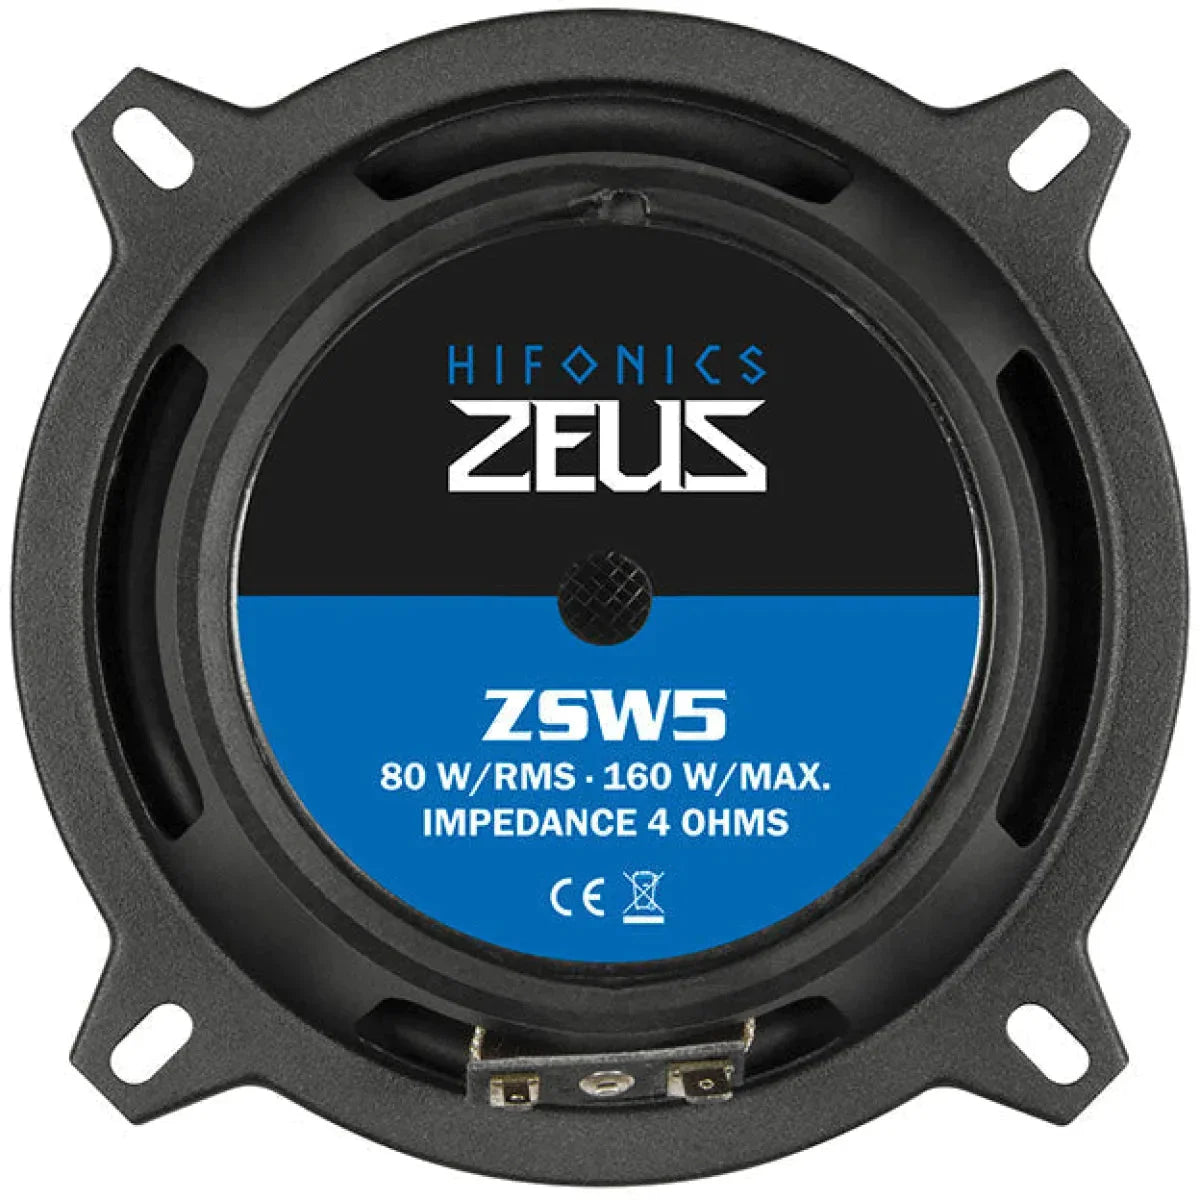 Hifonics-Zeus ZSW-5-5" (13cm) Tiefmitteltöner-Masori.de